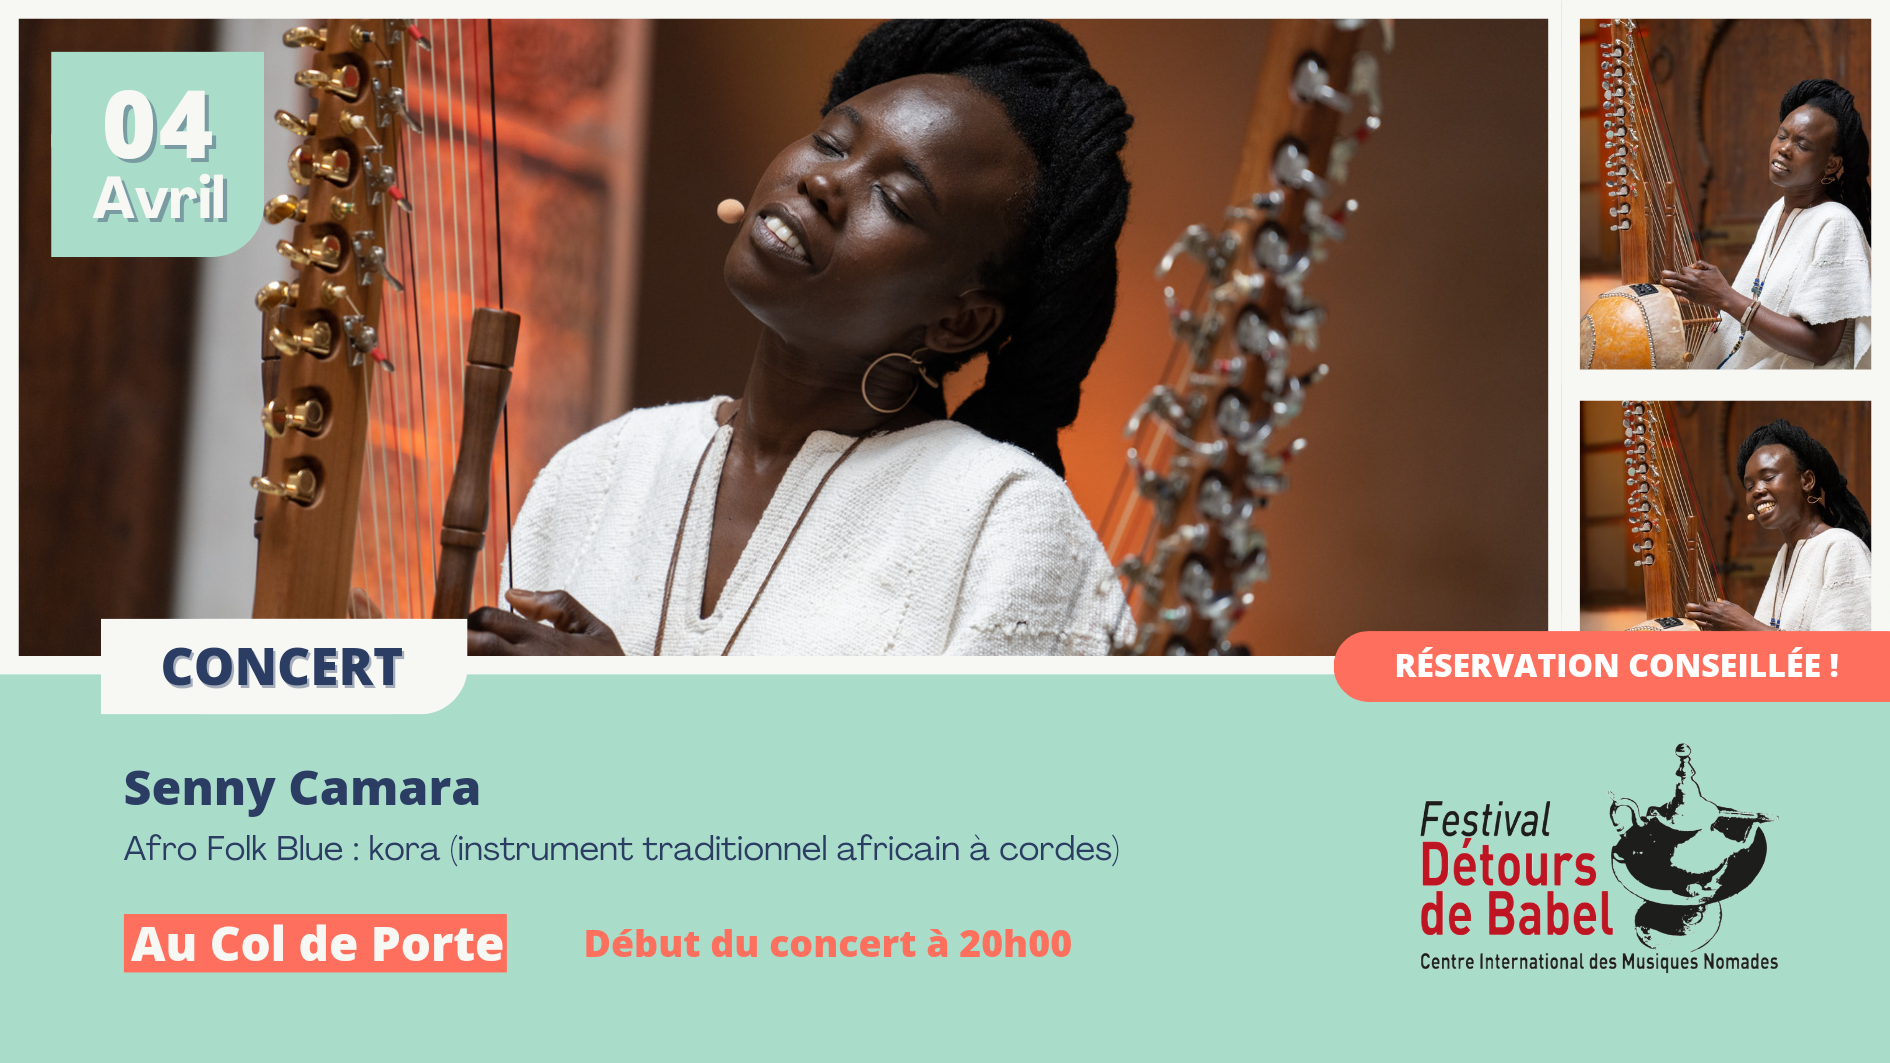 Senny Camara en concert pour le Festival des Détours de Babel